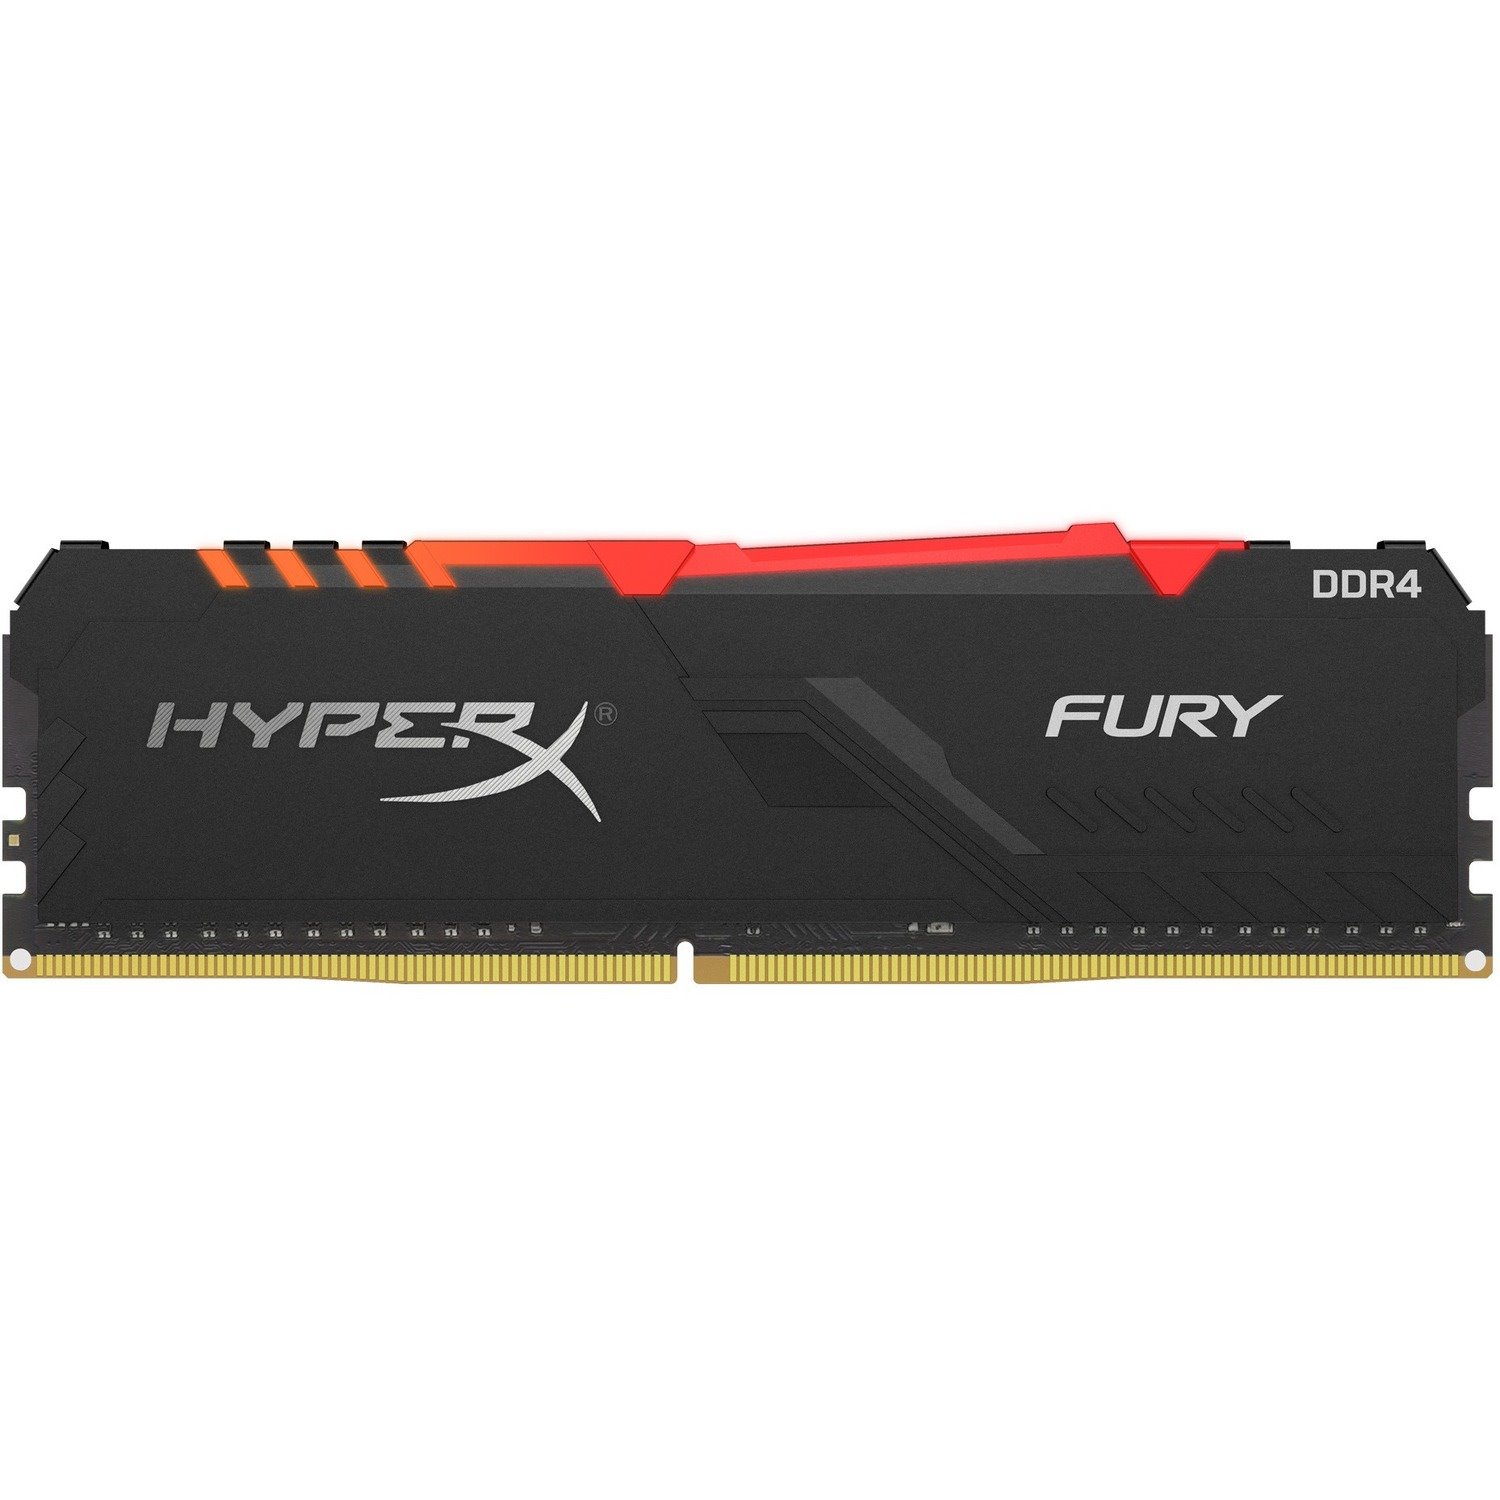 HyperX FURY 16GB DDR4 SDRAM Memory Module